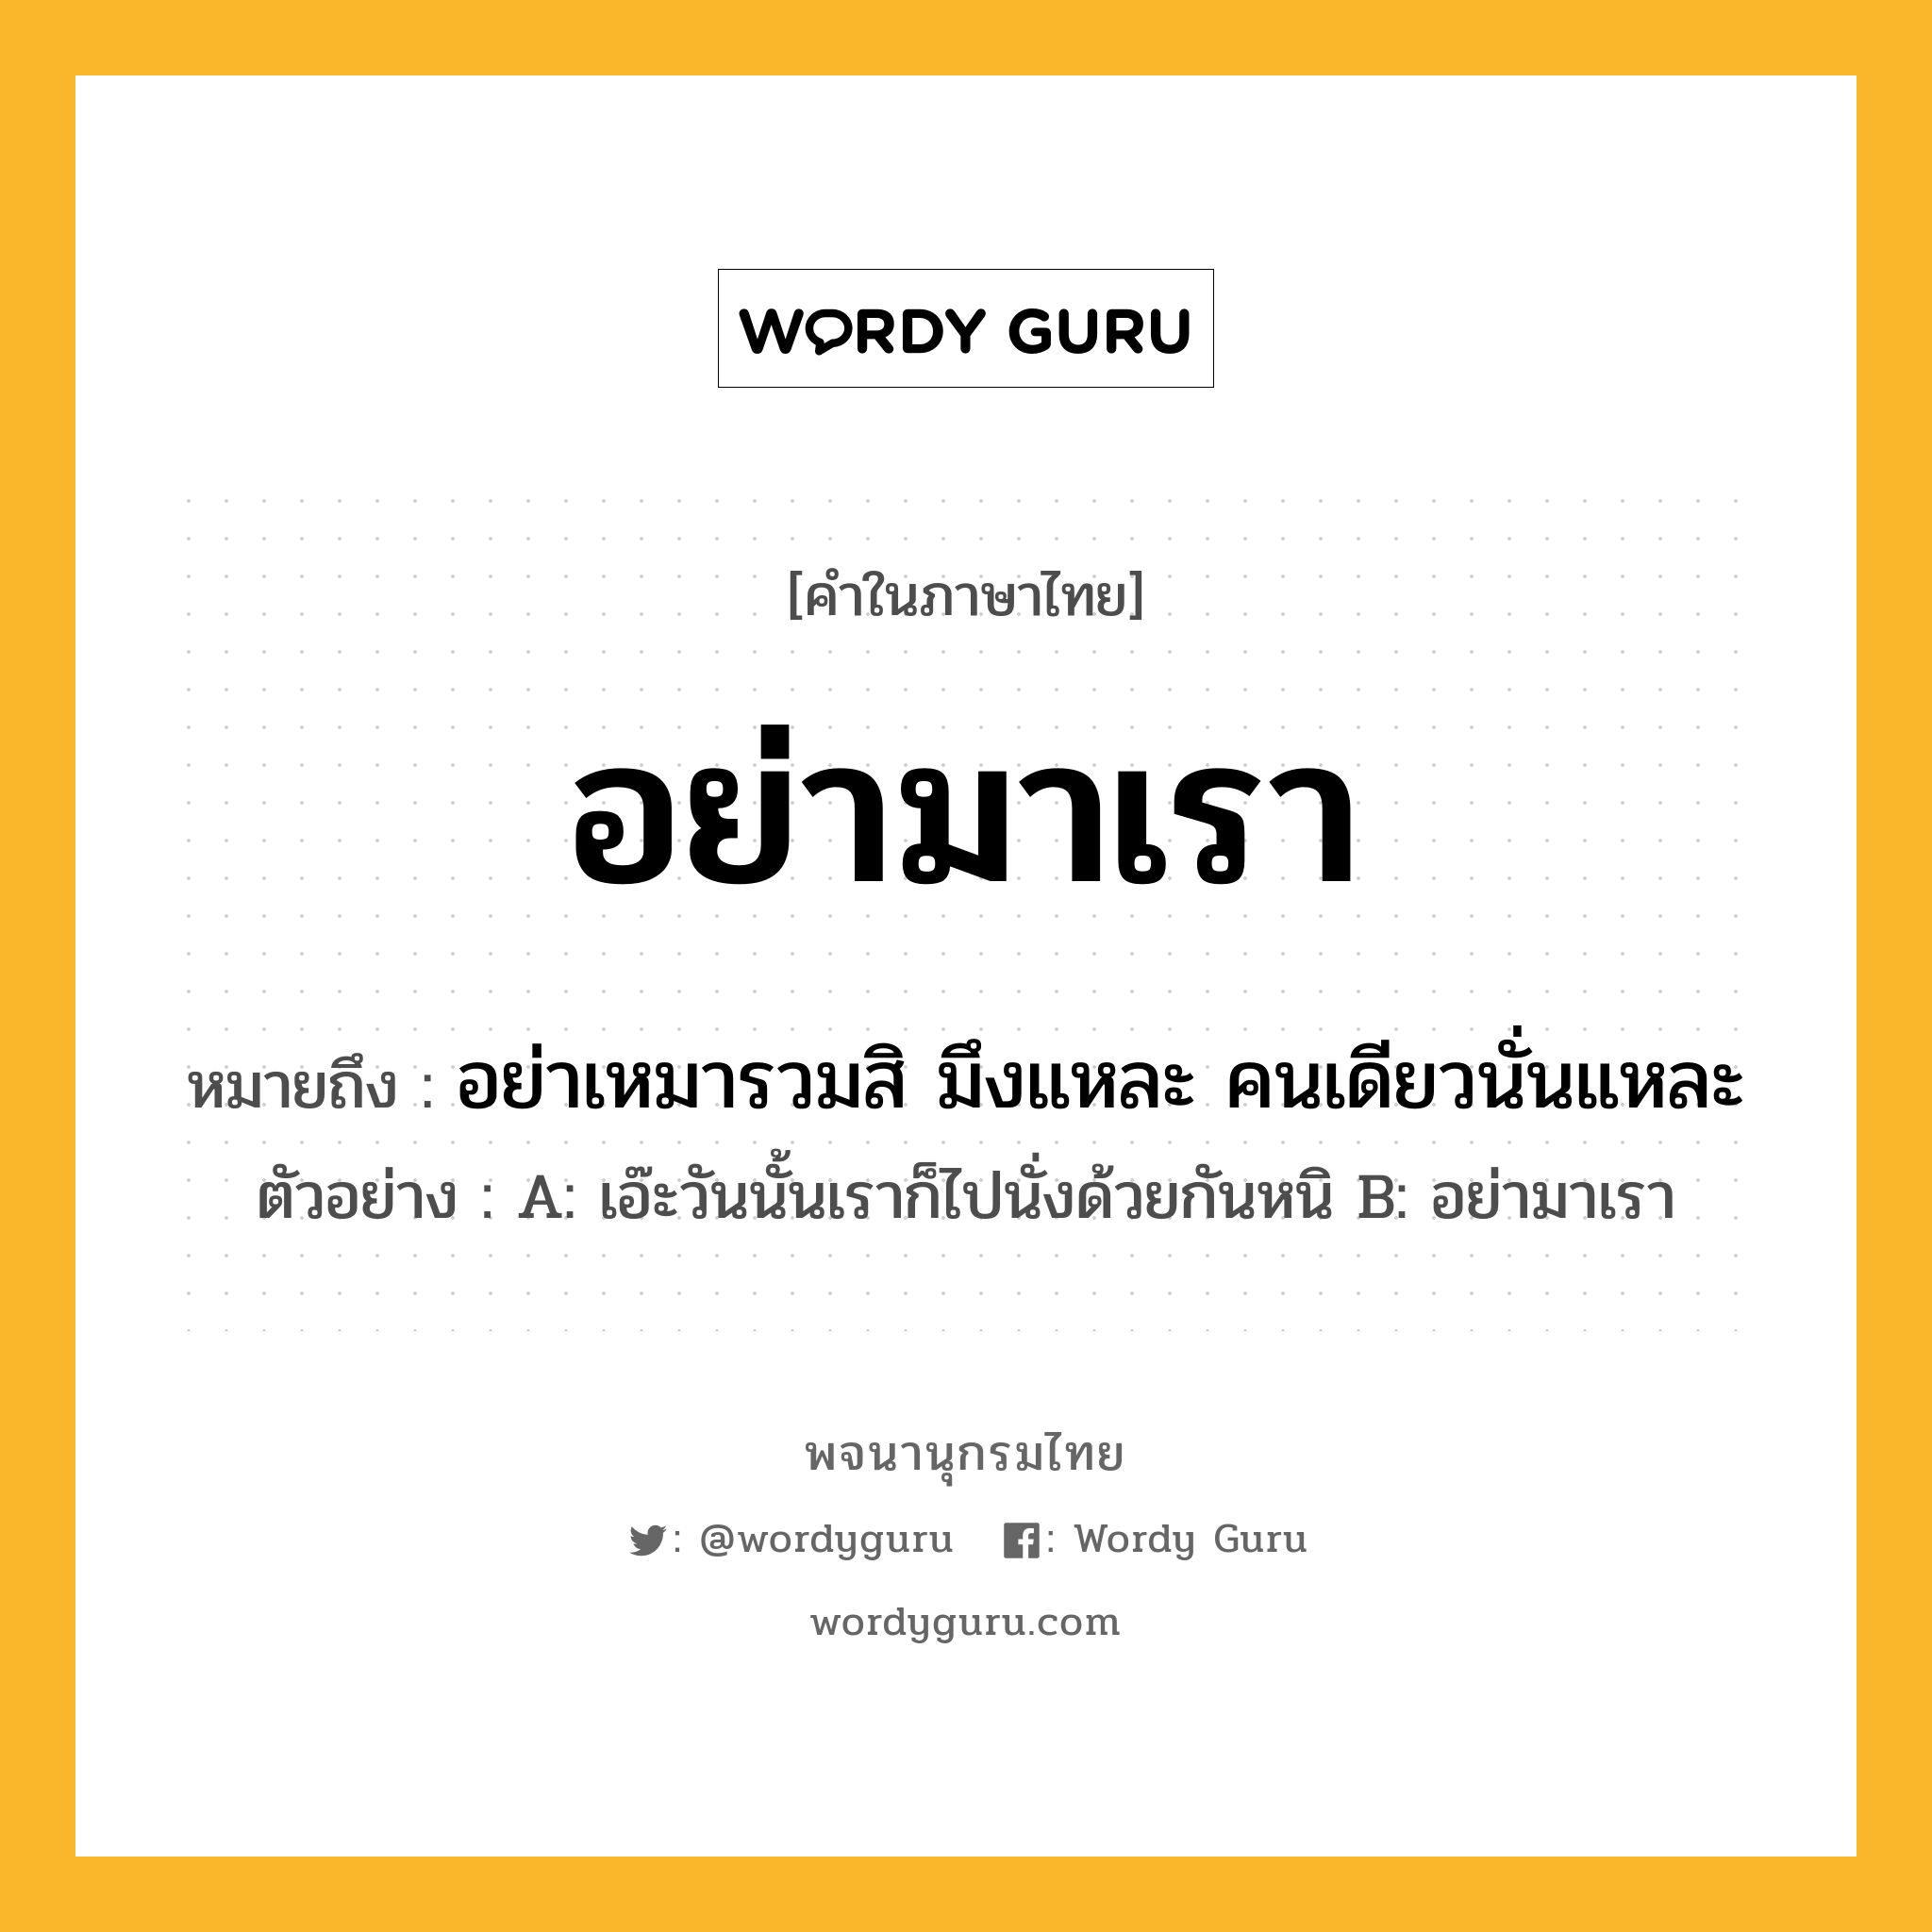 อย่ามาเรา หมายถึงอะไร?, คำในภาษาไทย อย่ามาเรา หมายถึง อย่าเหมารวมสิ มึงแหละ คนเดียวนั่นแหละ ประเภท วลี ตัวอย่าง A: เอ๊ะวันนั้นเราก็ไปนั่งด้วยกันหนิ B: อย่ามาเรา หมวด วลี